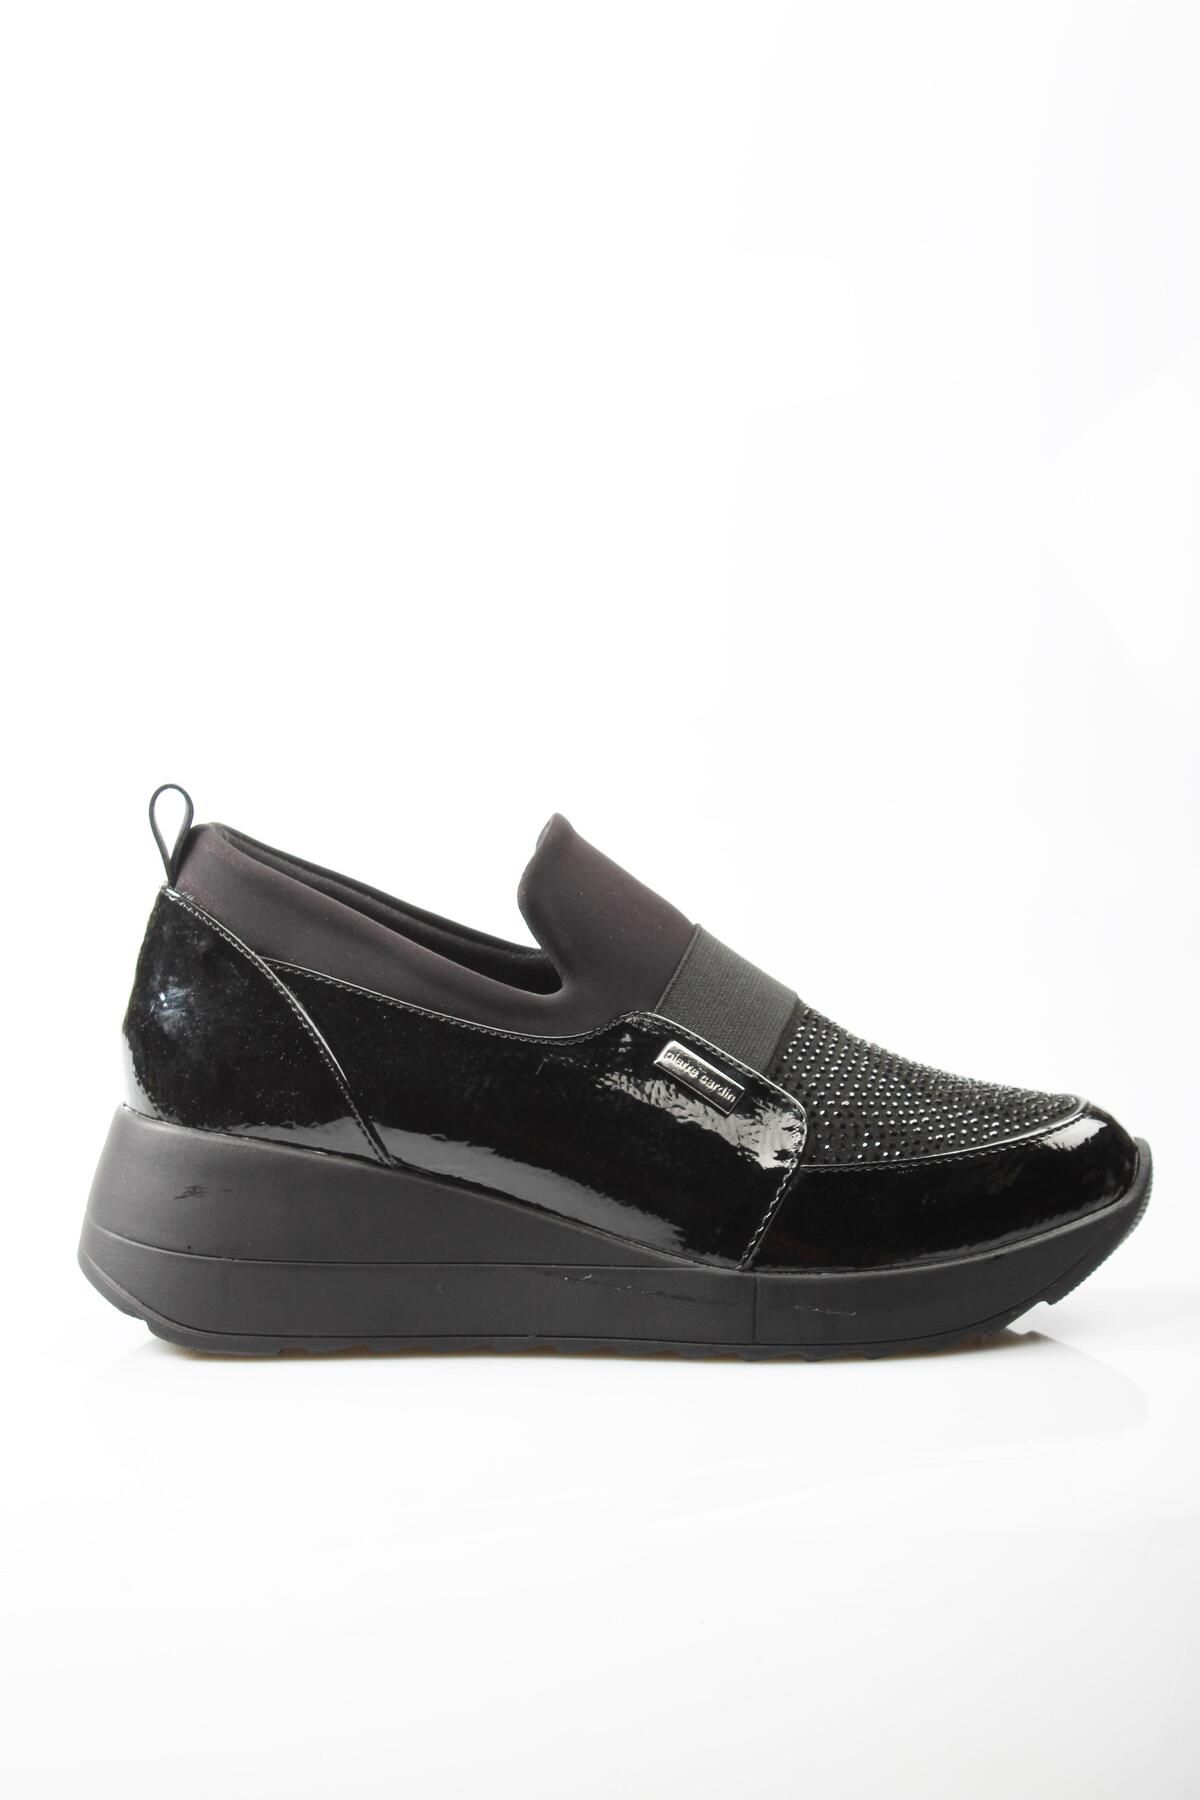 Pierre Cardin PC-52672 Parlak Siyah Kadın Ayakkabı